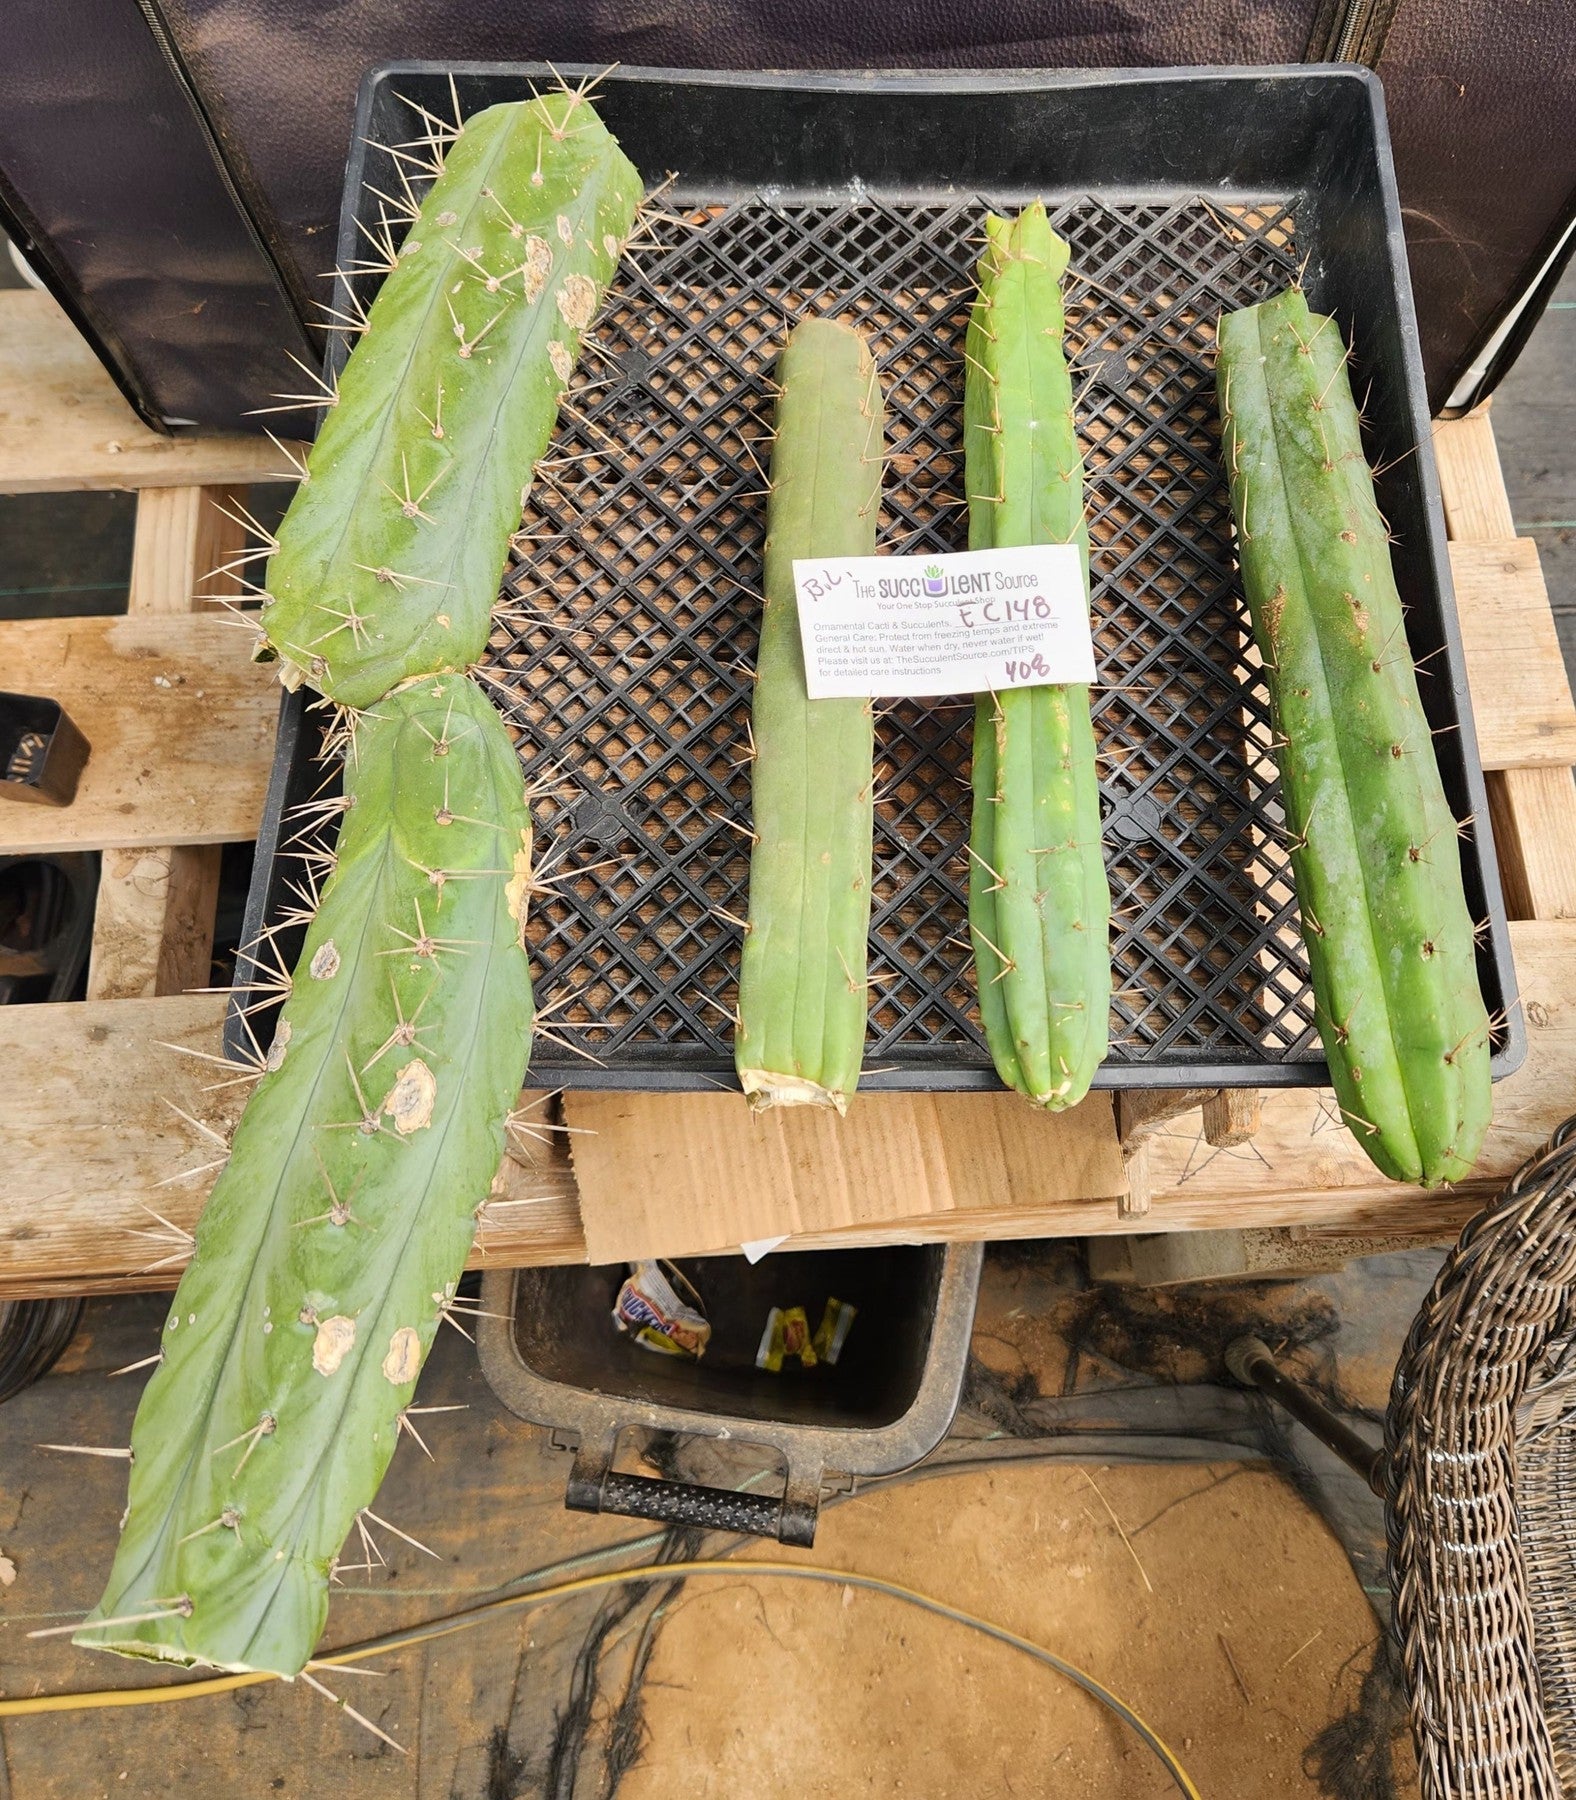 #EC148 EXACT Trichocereus Bridgesii Jiimz Cactus Cutting TLC Lot-Cactus - Large - Exact-The Succulent Source